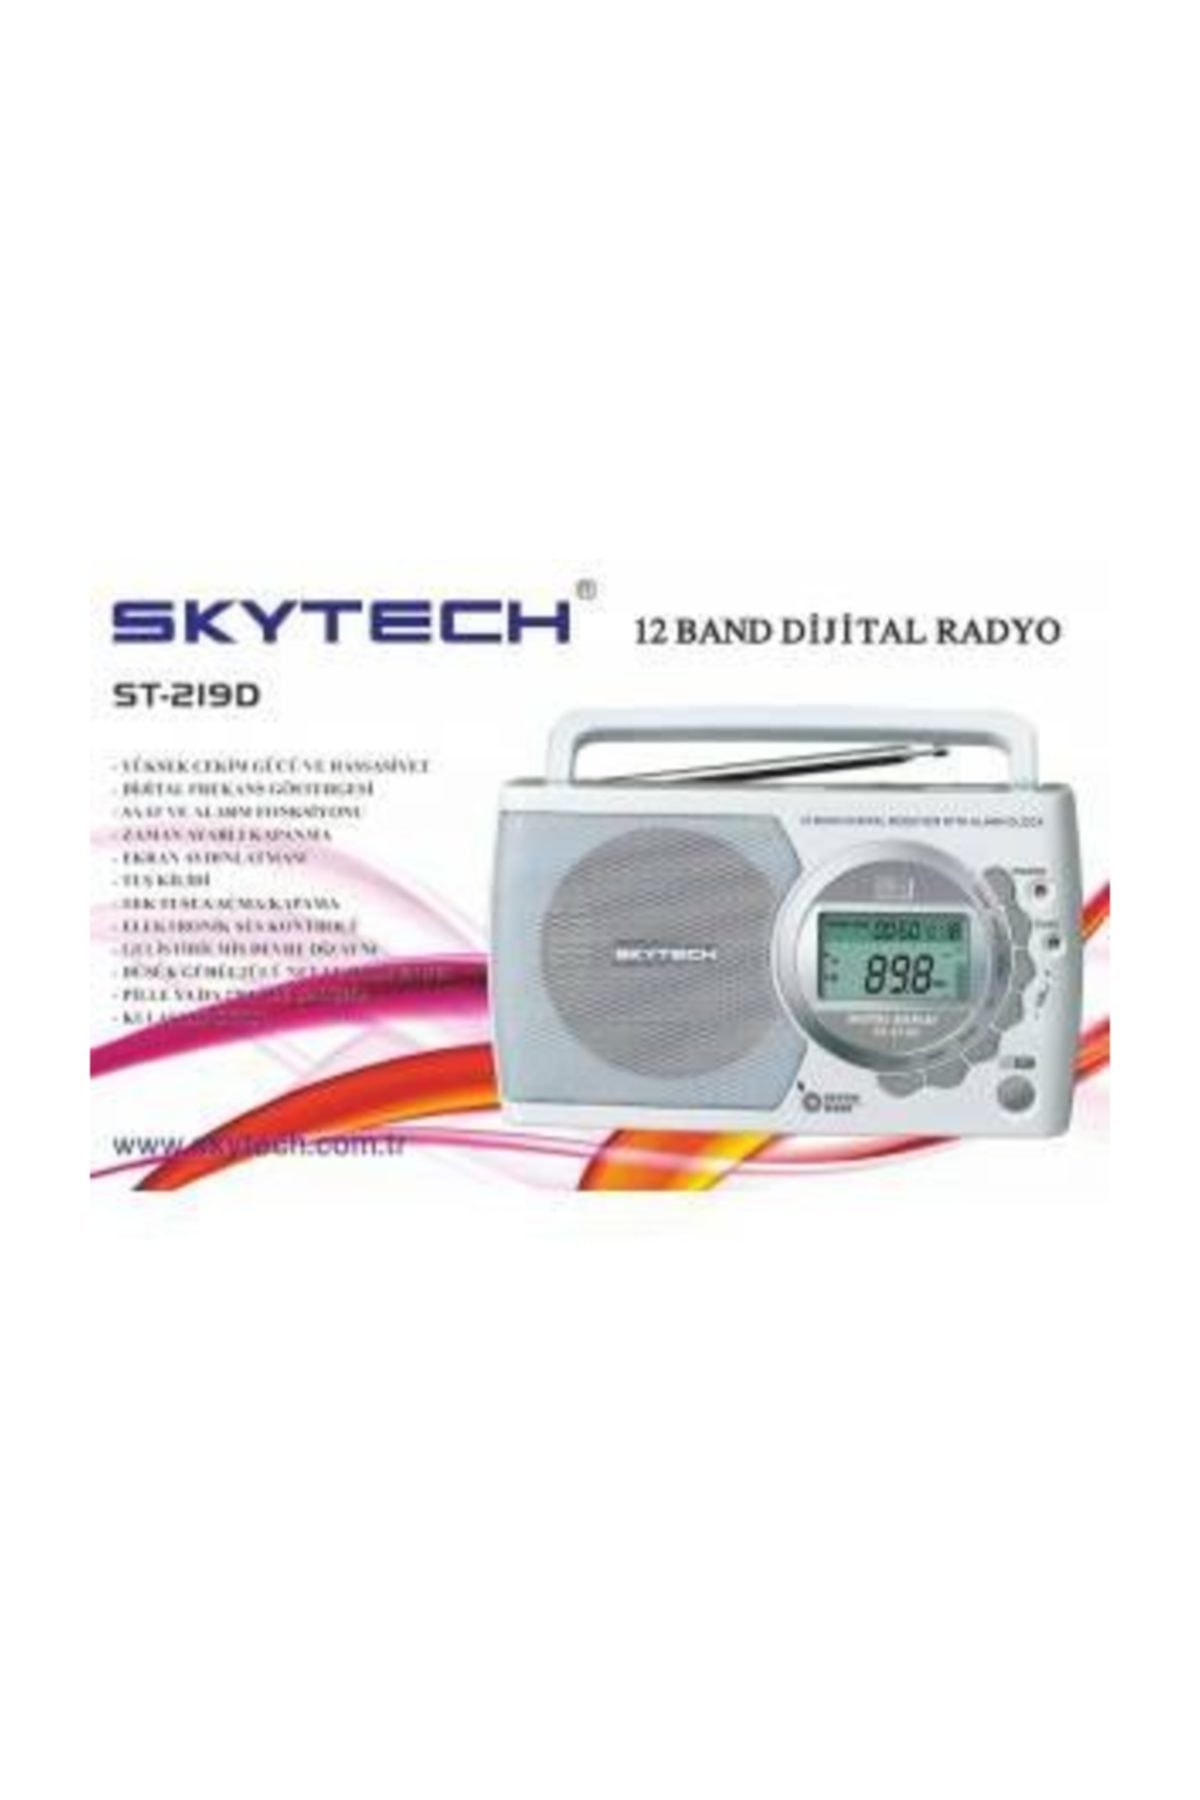 SKYTECH St-219d 12 Band Digital Radyo RADYO-SKYT-034